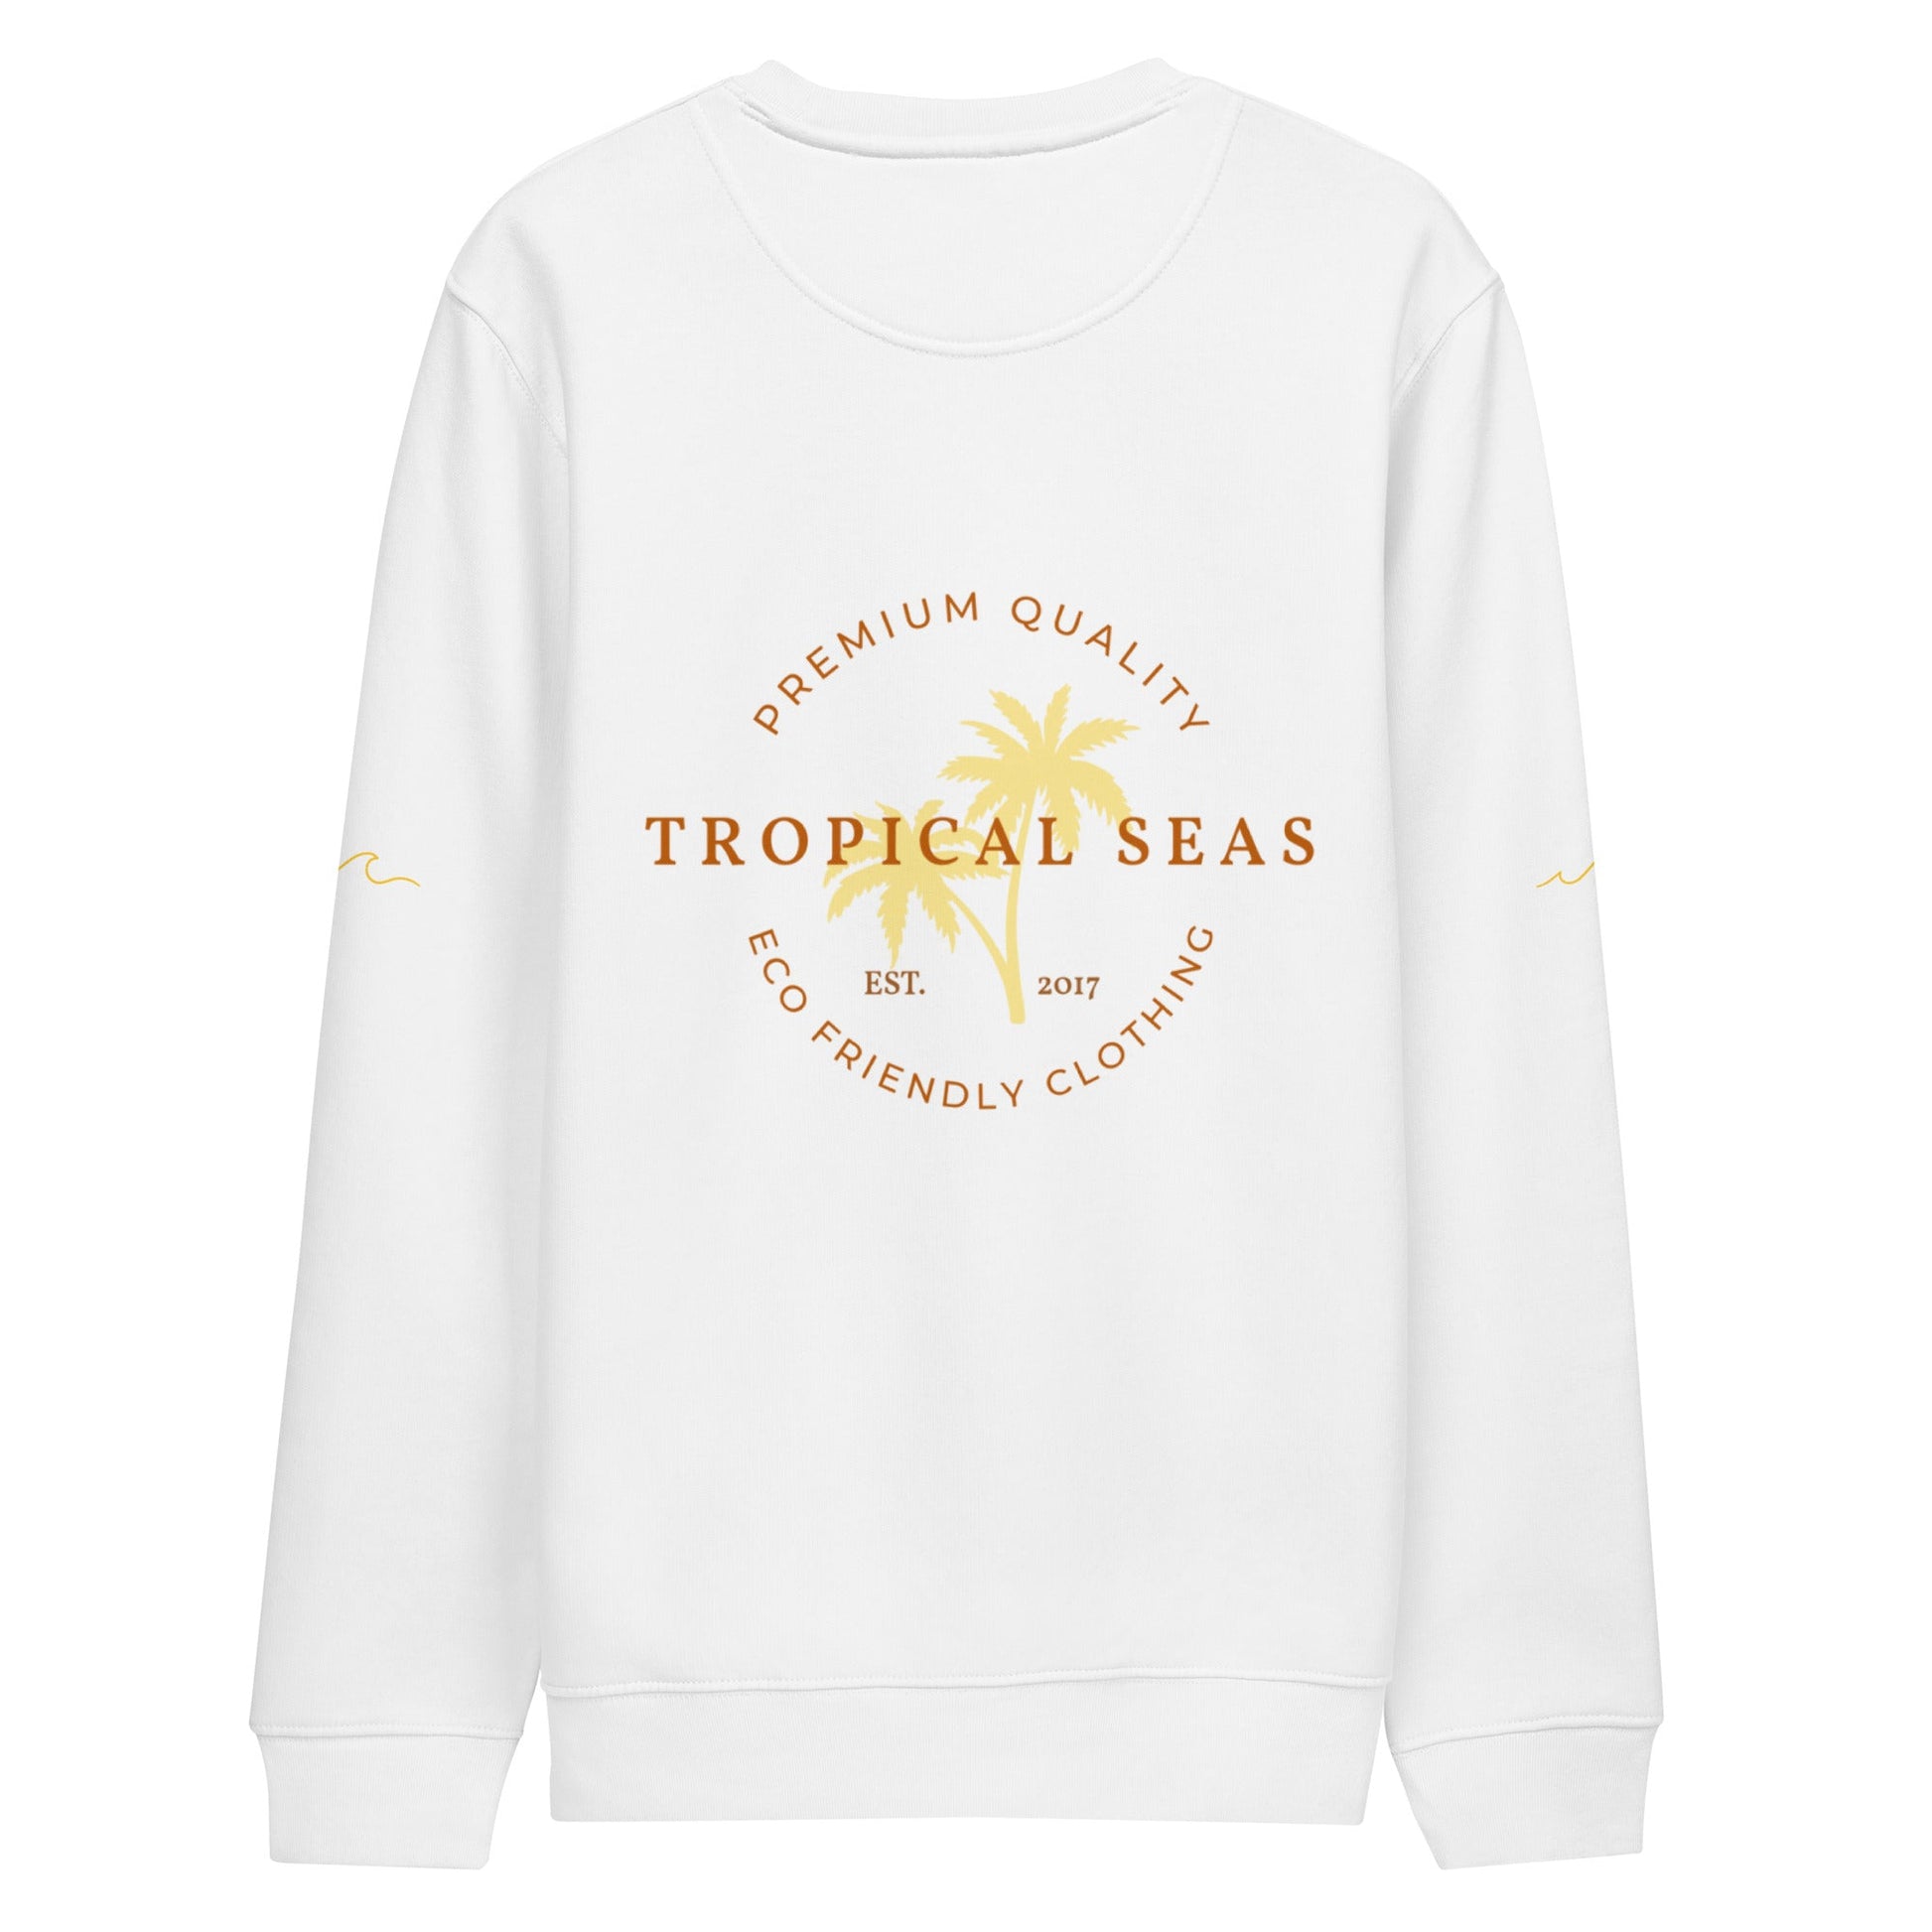 Premium Tropical Seas Eco Sweatshirt - Tropical Seas Clothing 